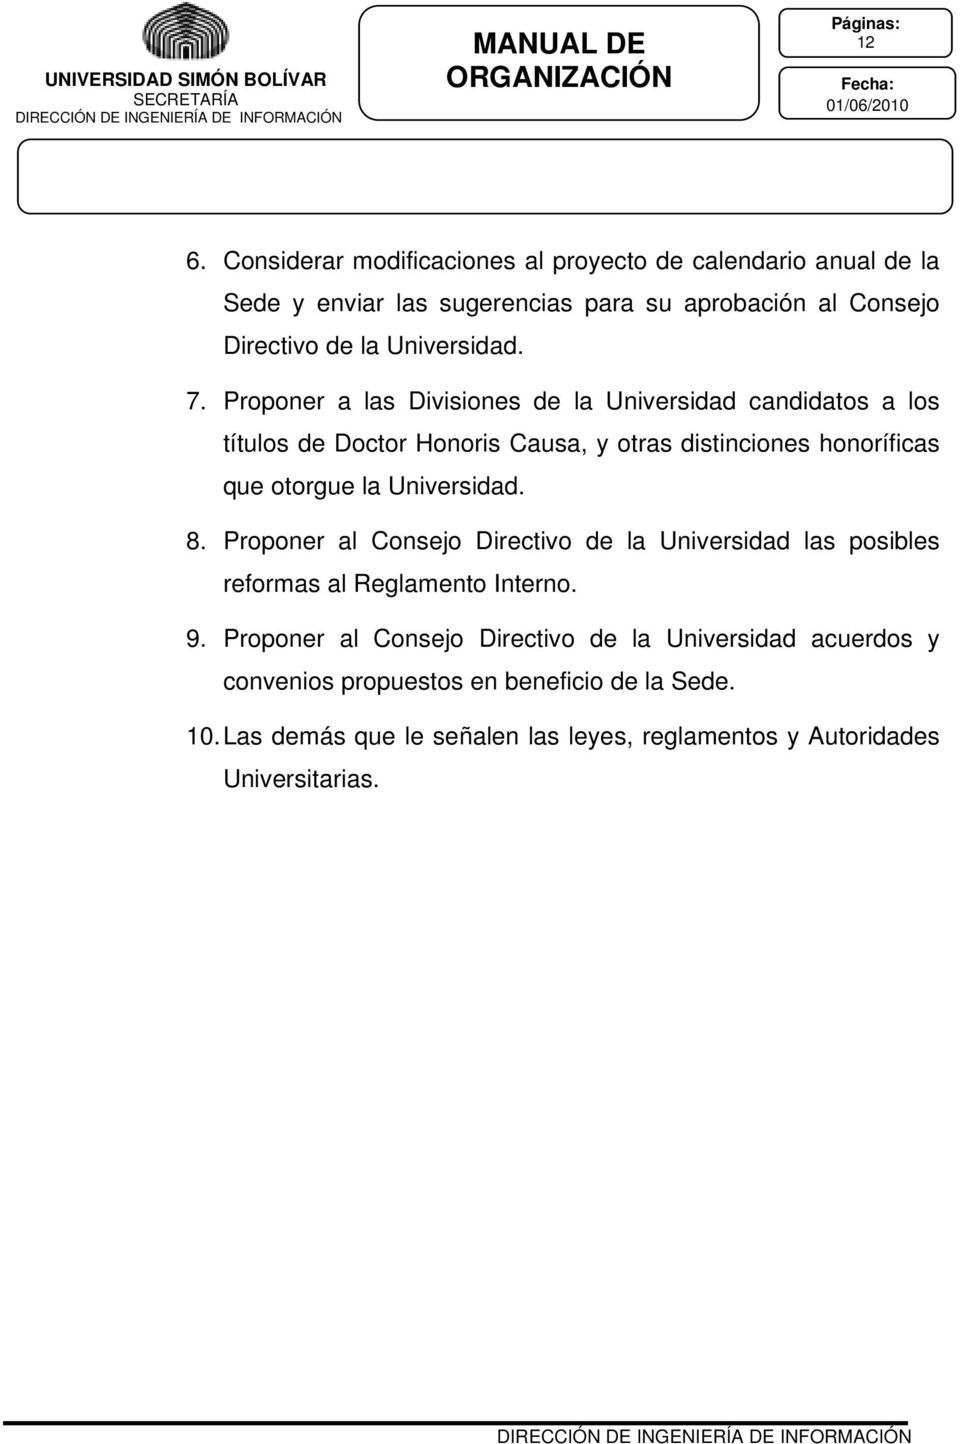 Proponer a las Divisiones de la Universidad candidatos a los títulos de Doctor Honoris Causa, y otras distinciones honoríficas que otorgue la